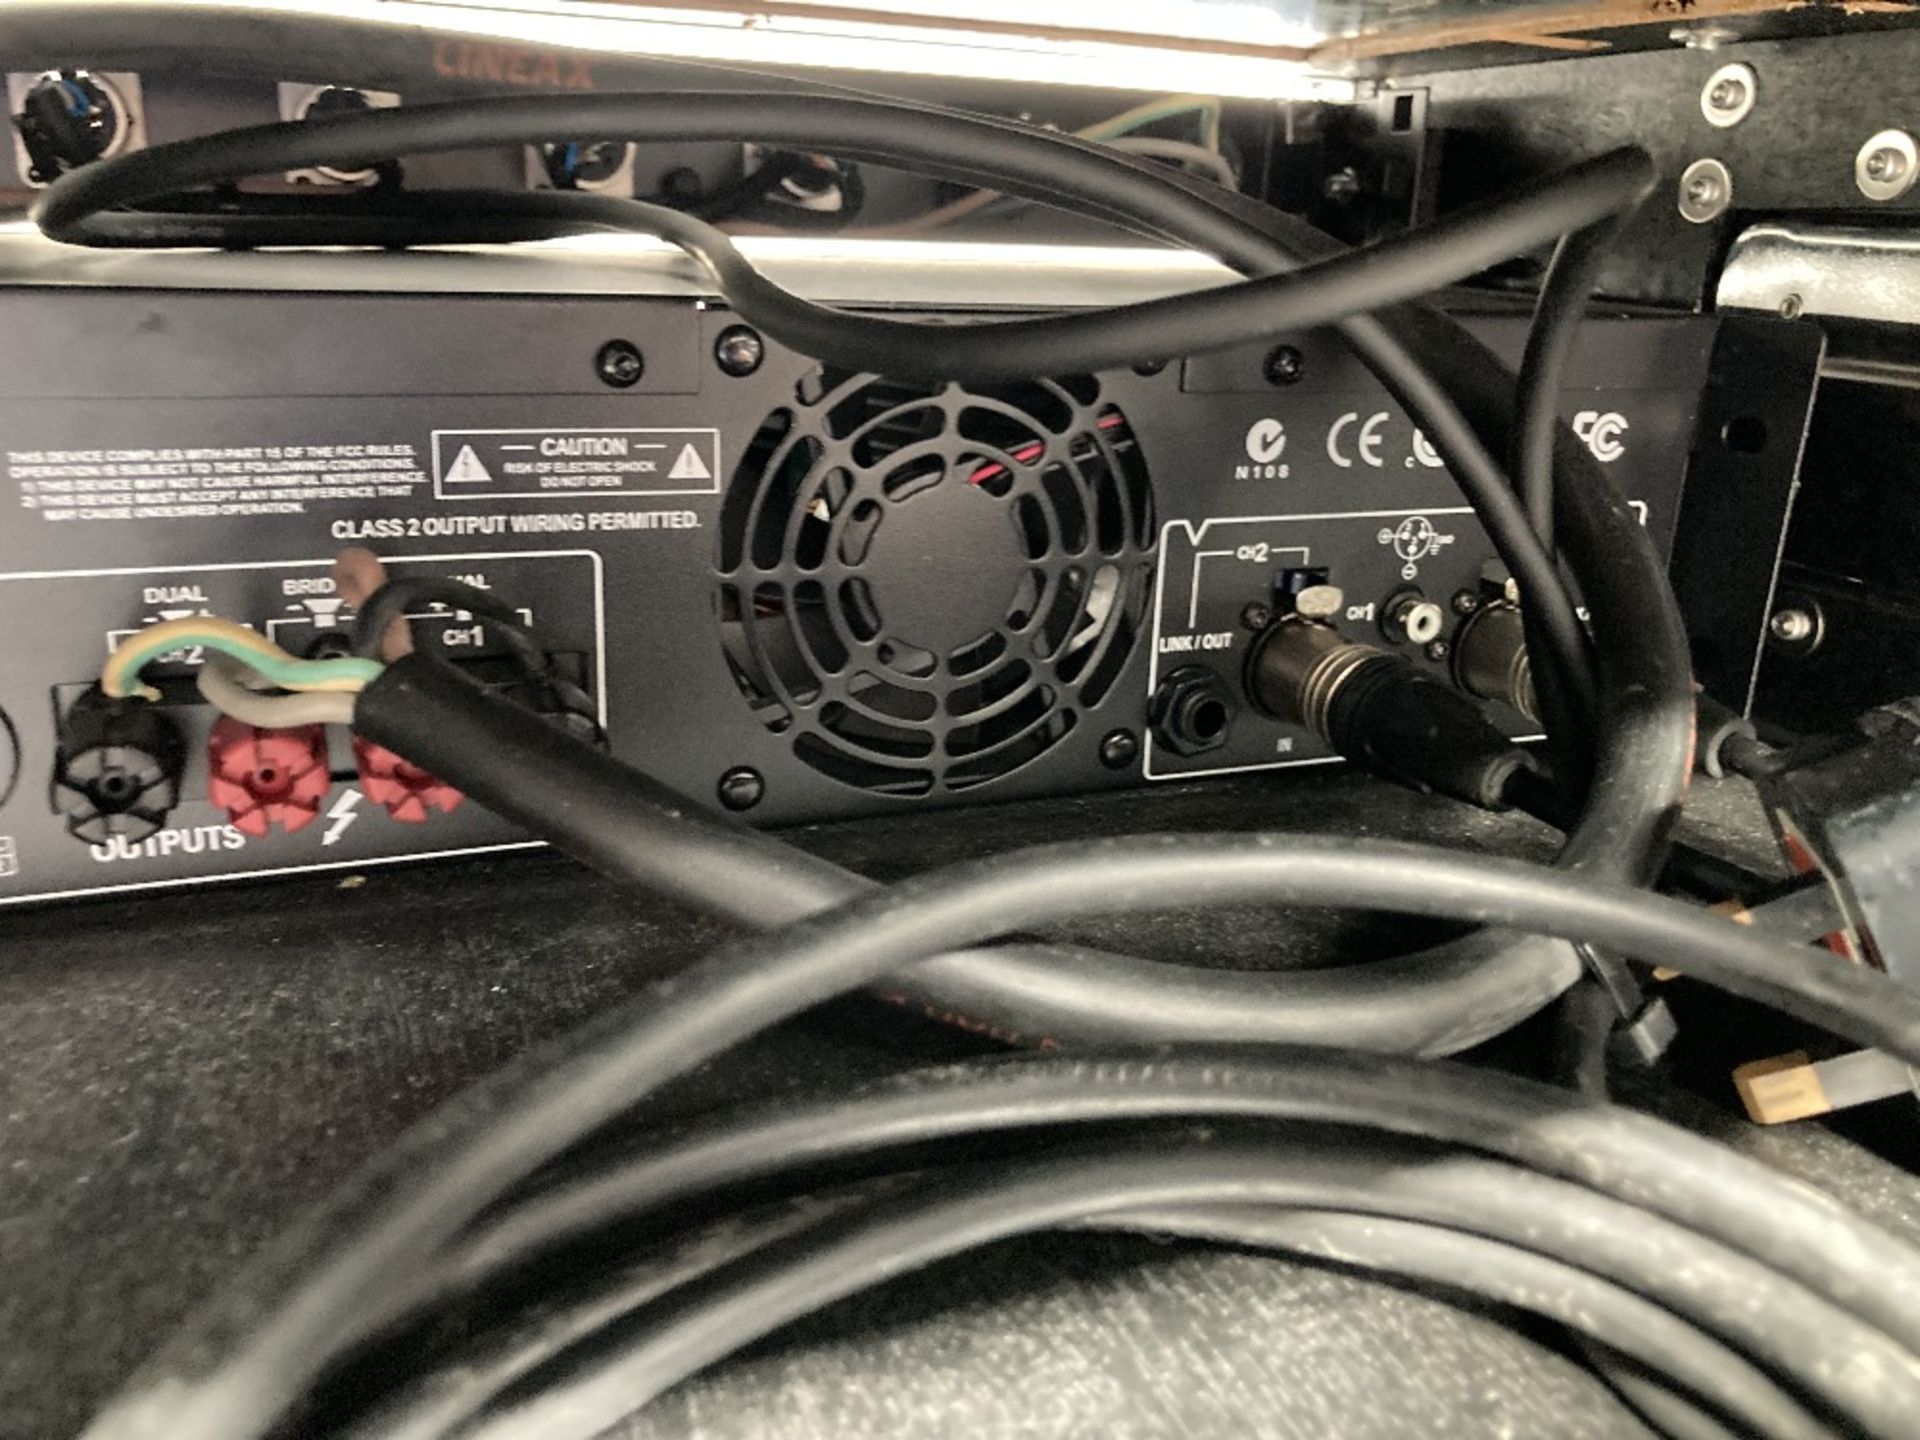 Crown XLS 1000 Audio Amplifier & Heavy Duty Flight Case Rack - Image 7 of 8